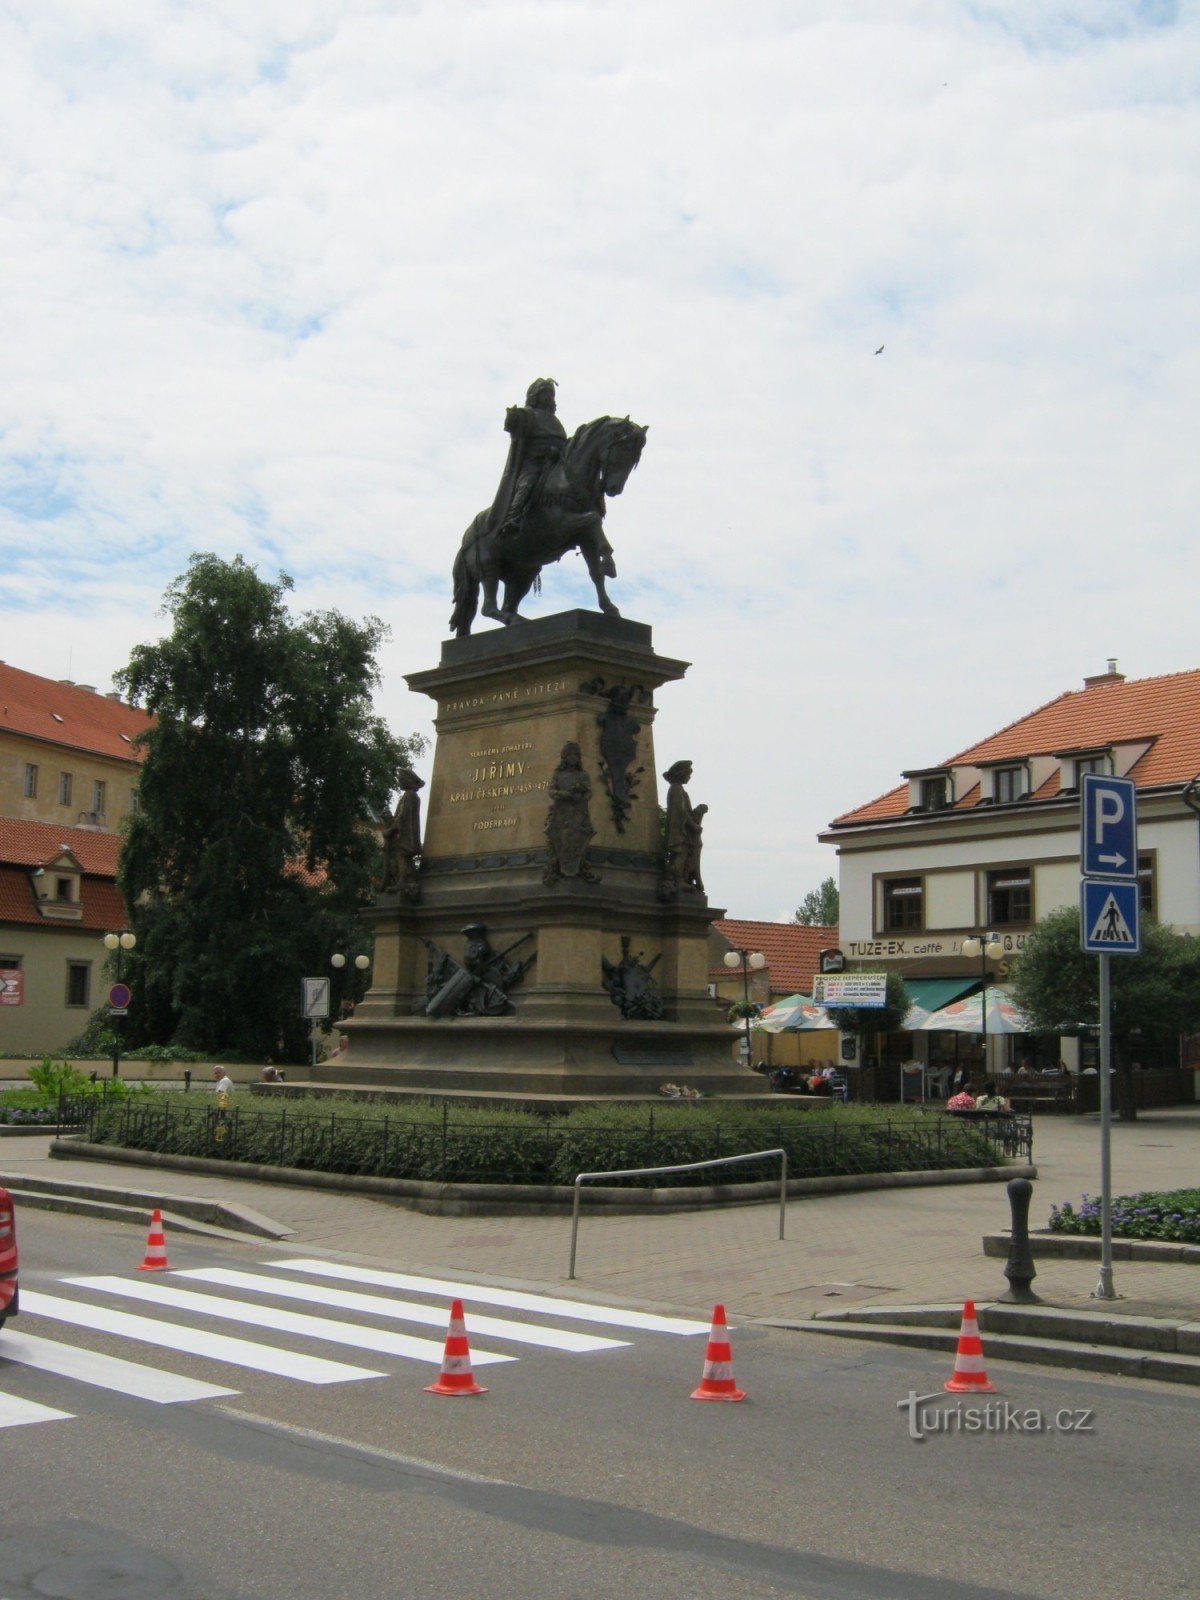 005 Άγαλμα του Γεωργίου στην πλατεία